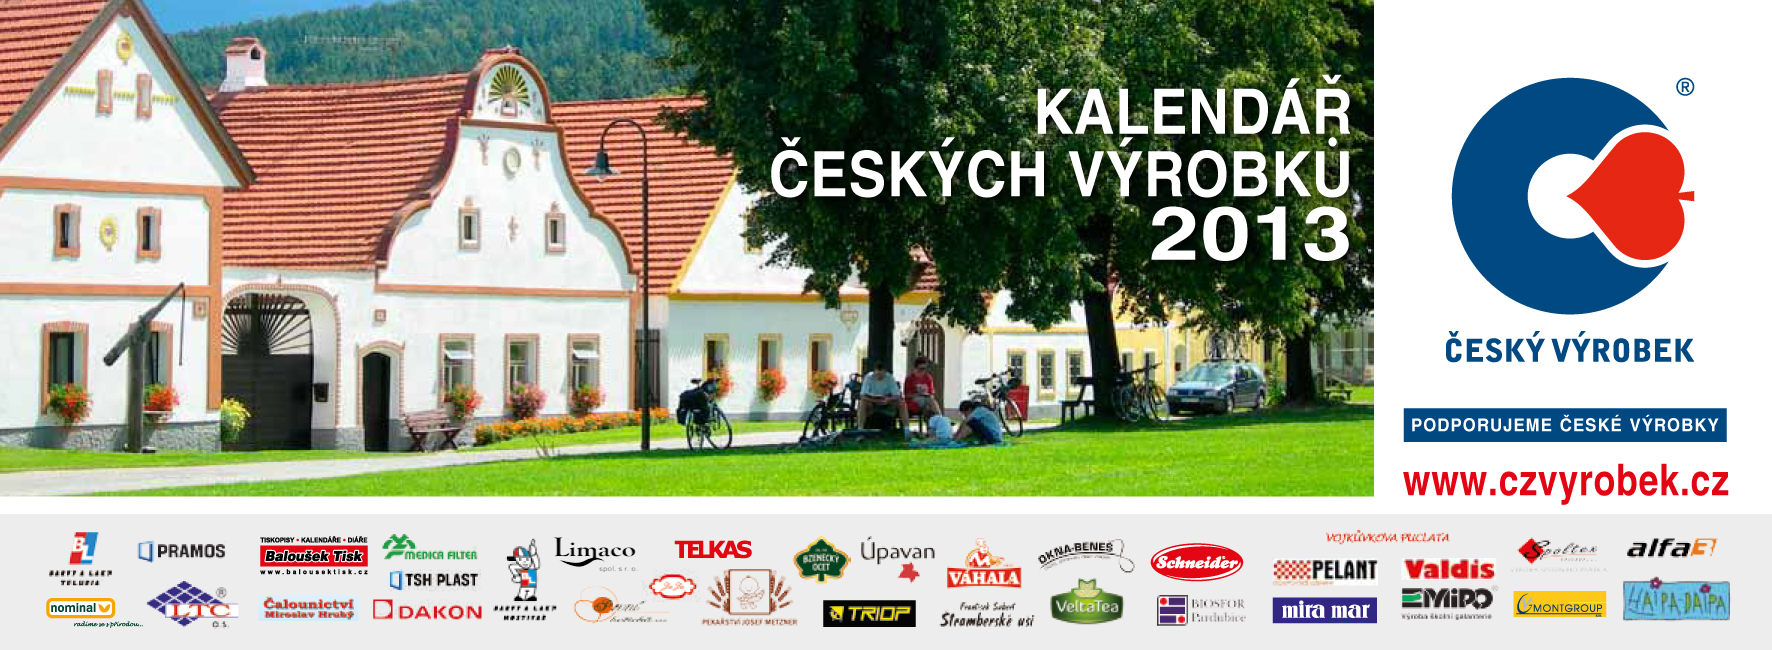 Kalendář českých výrobků